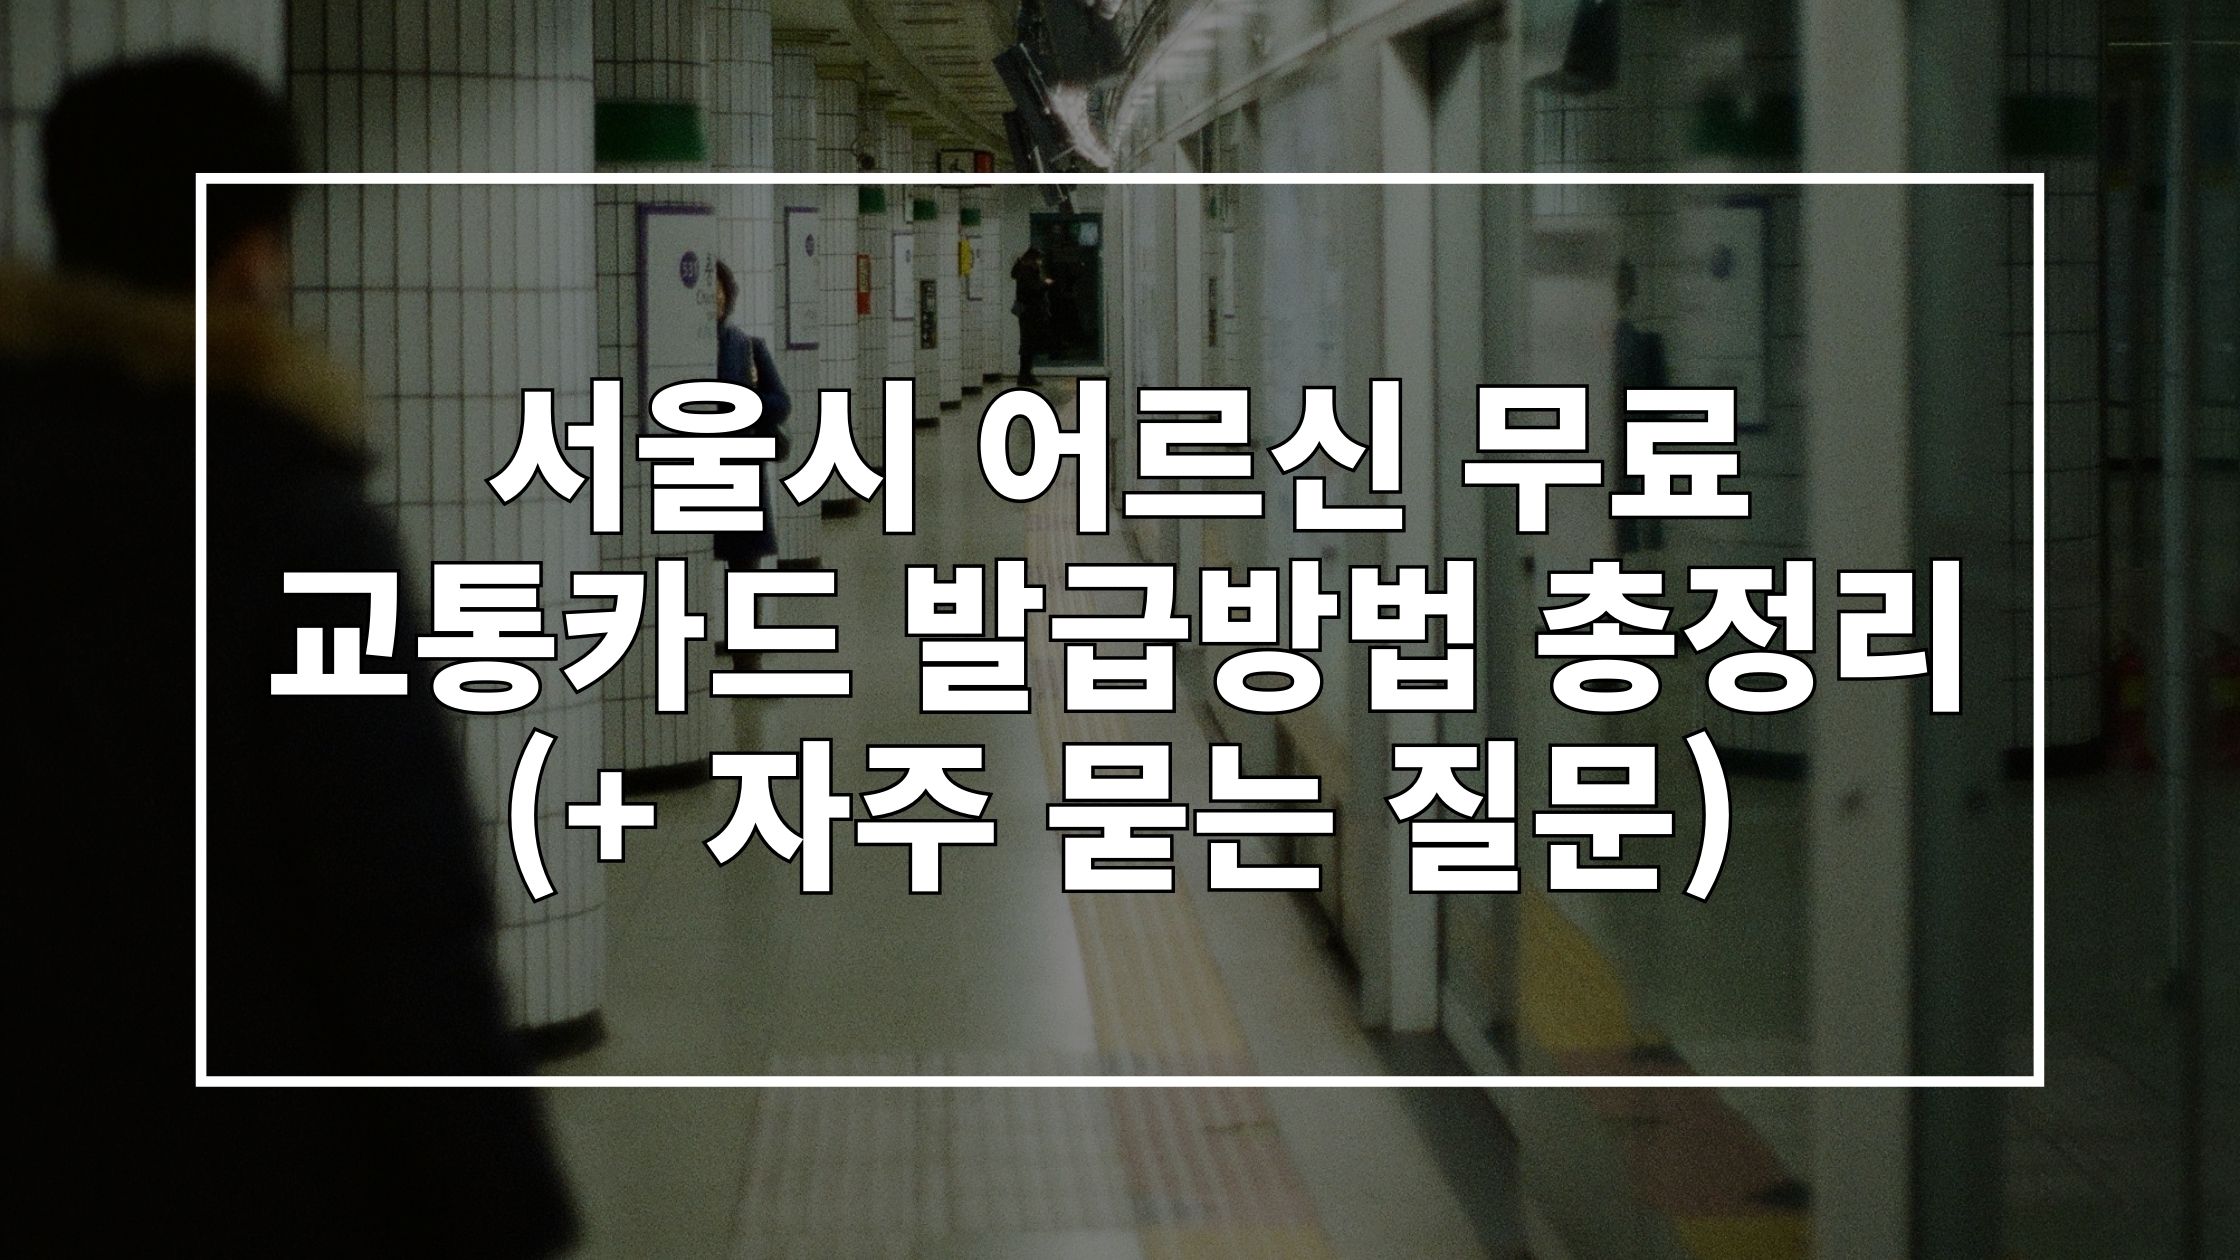 지하철 사진 위에 '서울시 어르신 무료 교통카드 발급방법 총정리'라고 쓰인 썸네일 이미지입니다.